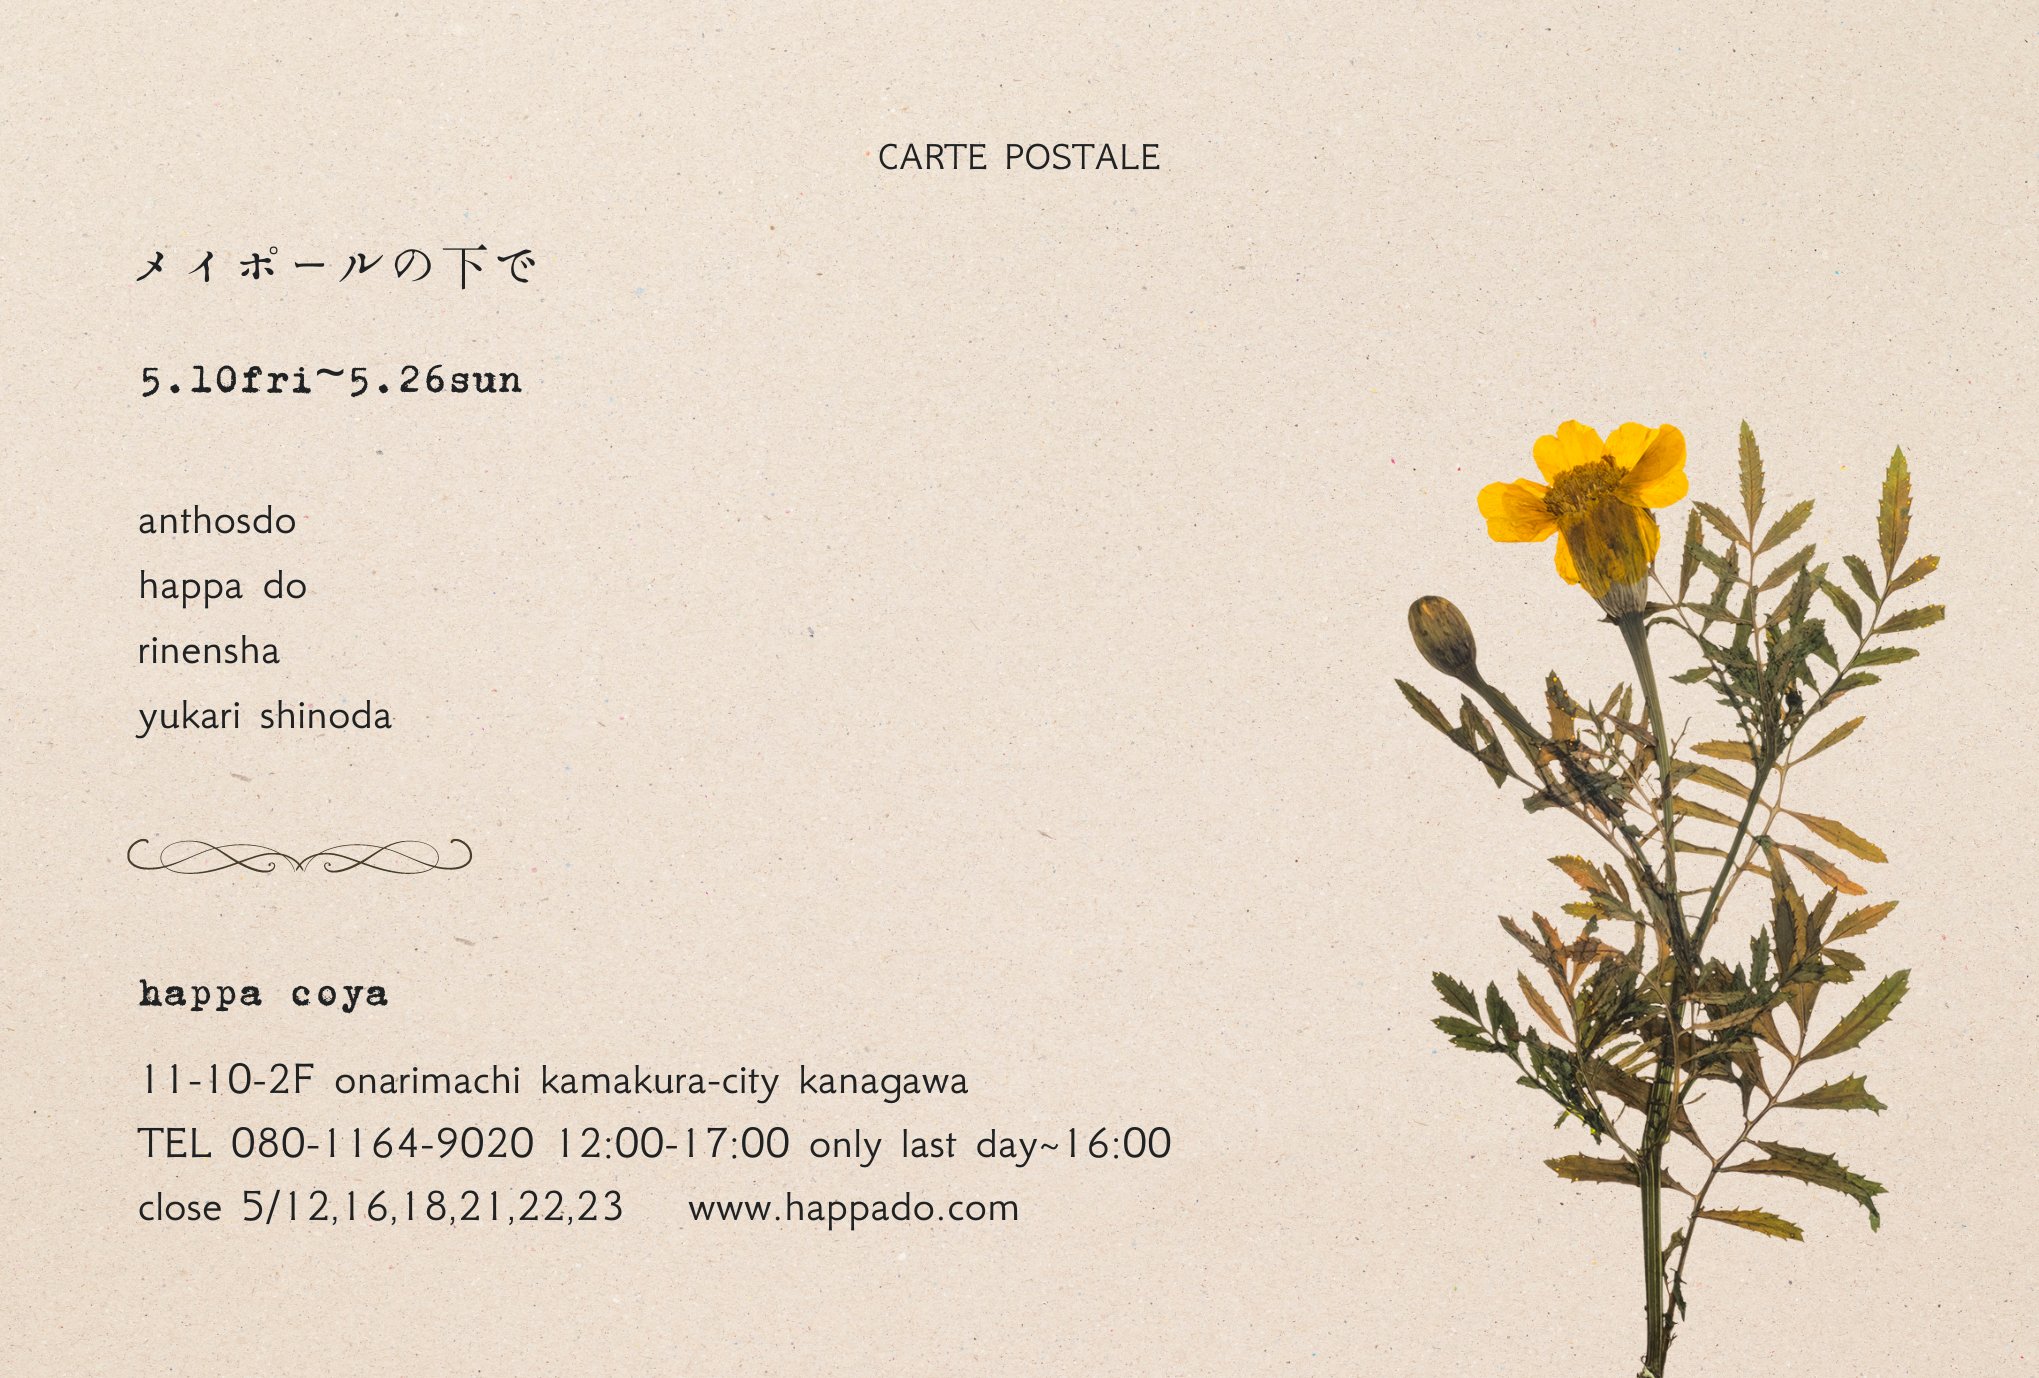 鎌倉の葉っぱ小屋さんでの「メイポールの下で」の展示のフライヤーです。展示会名、参加作家さん、開催日程が書かれており、押し花の写真が載っています。